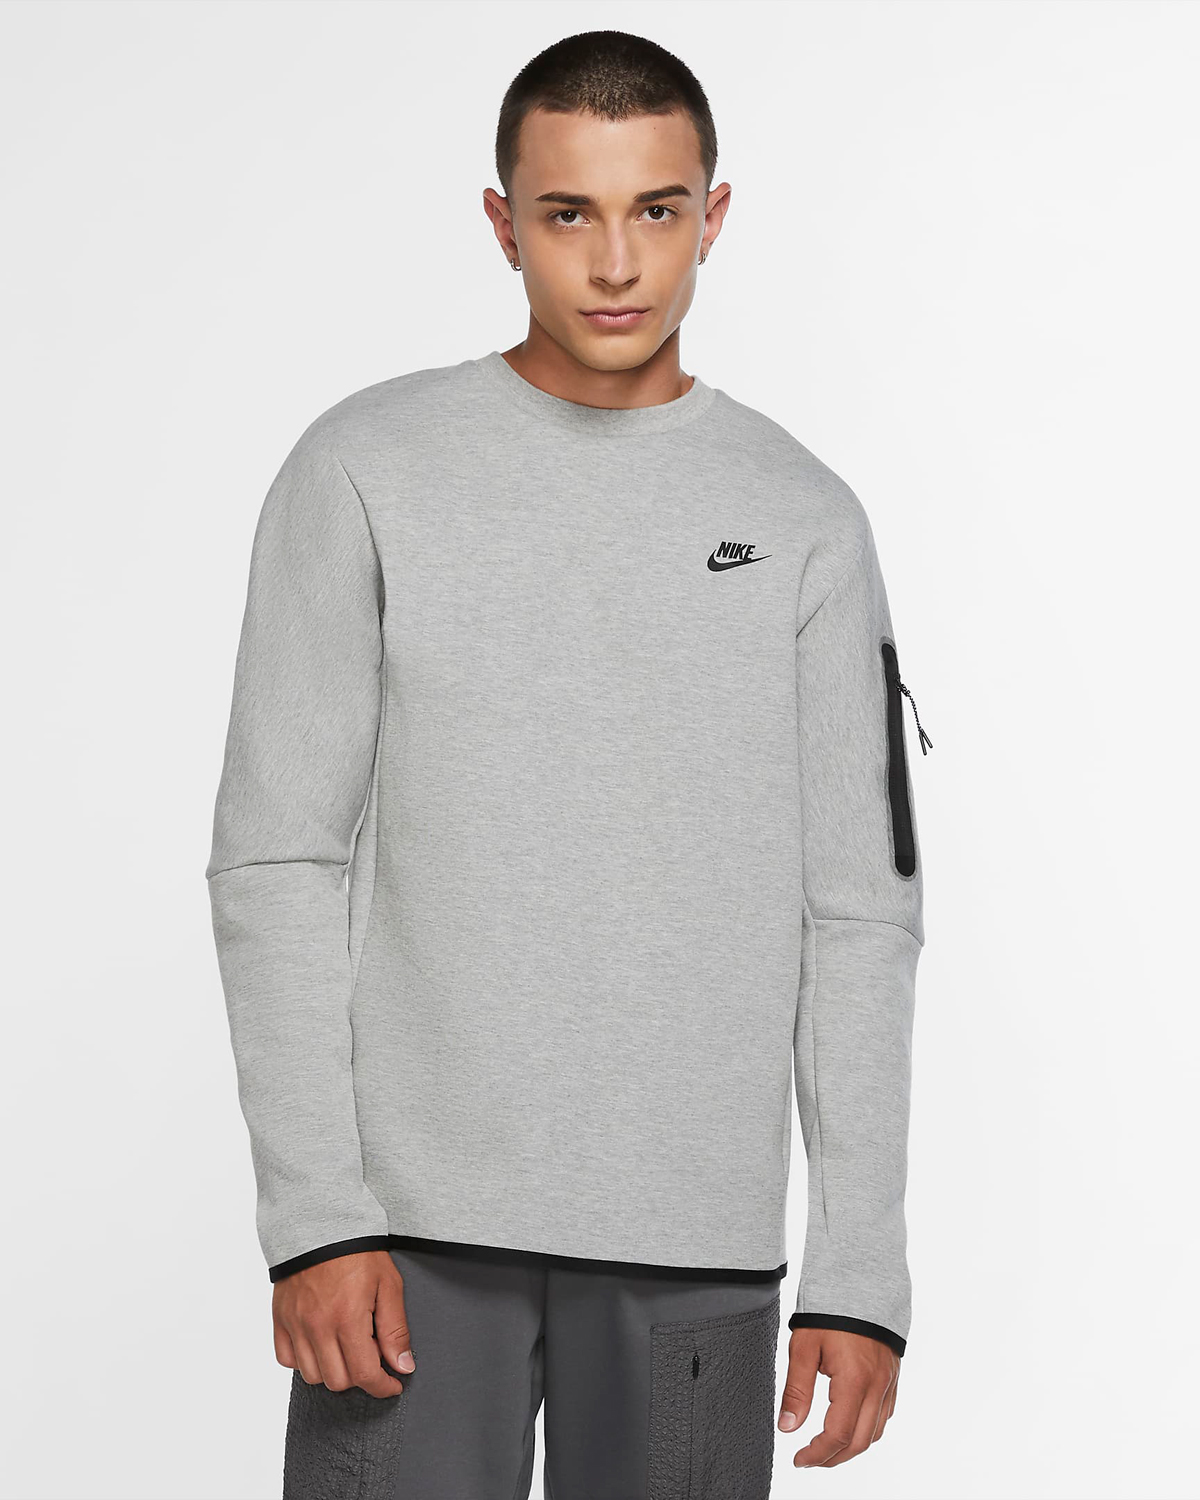 Nike-Tech-Fleece-Crew-Sweatshirts-Grey